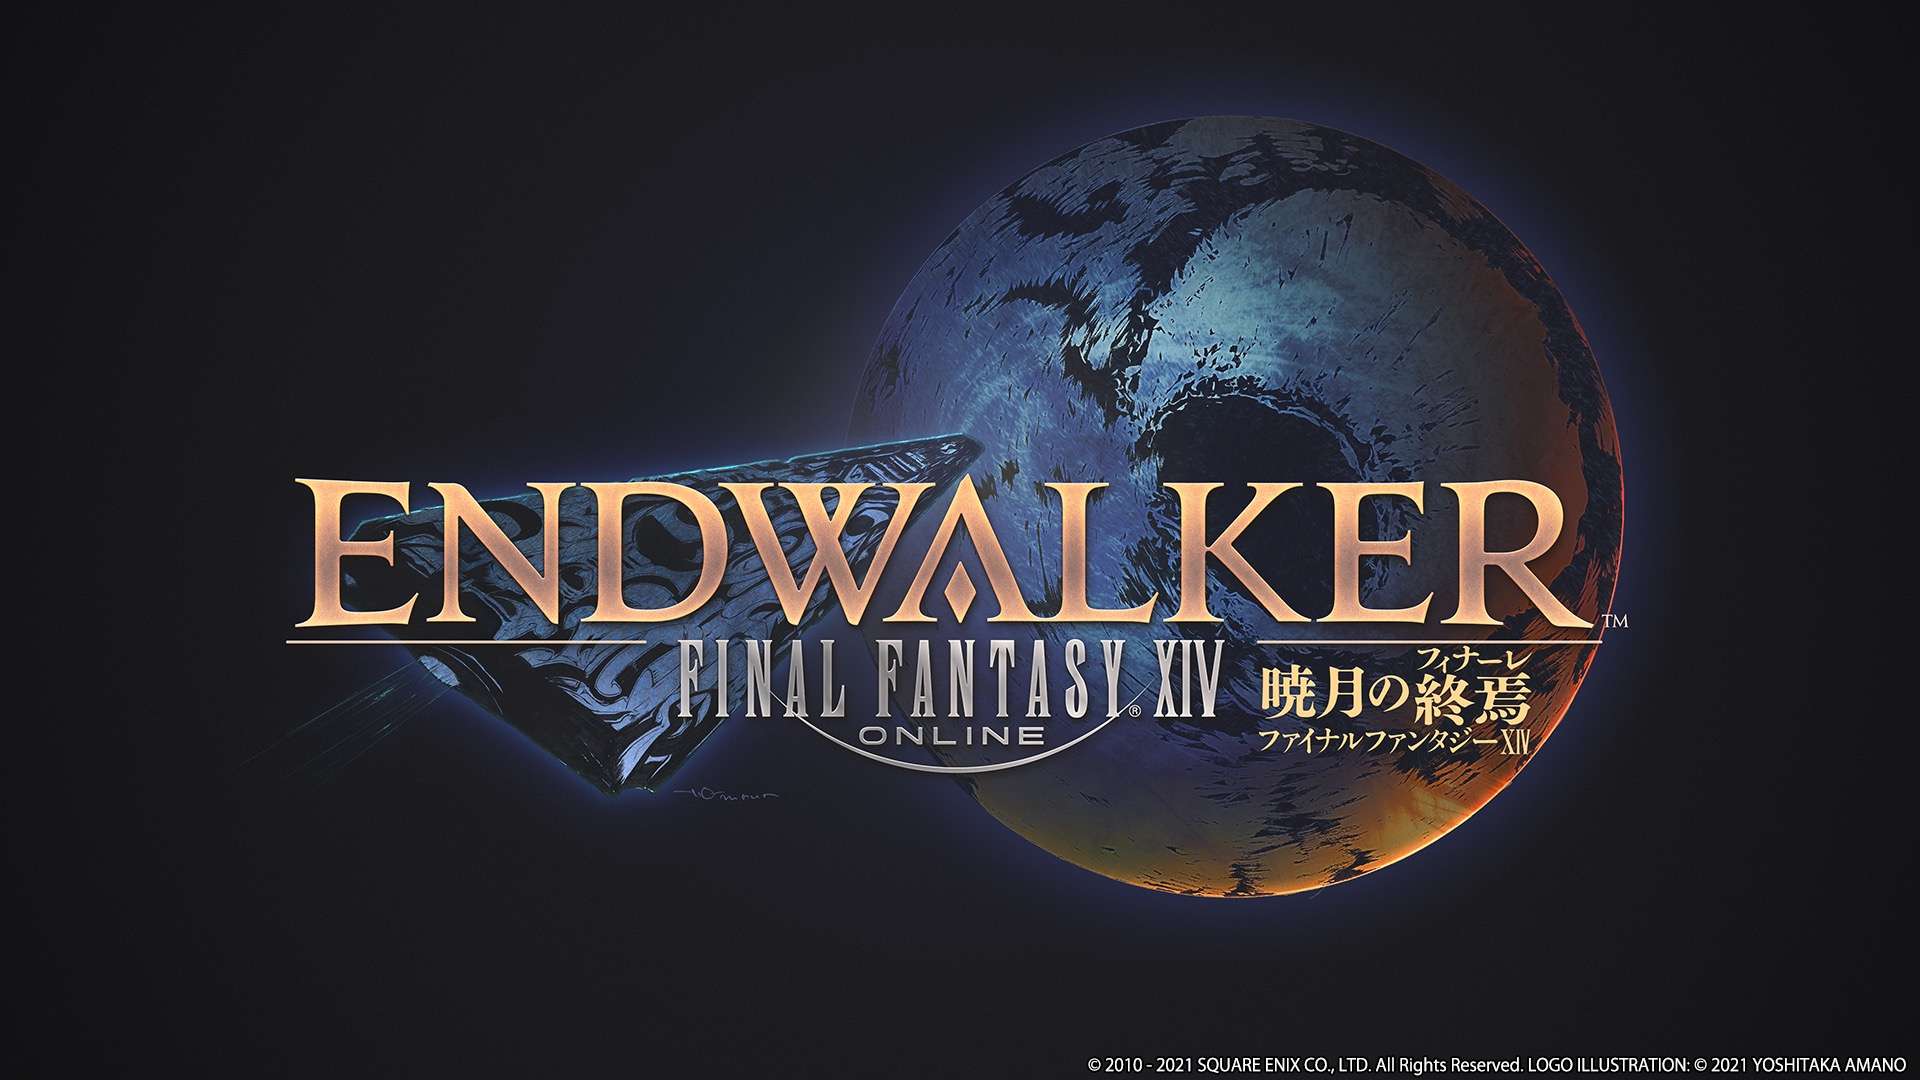 Square Enix reveals Endwalker, Final Fantasy XIV's next expansion, PS5